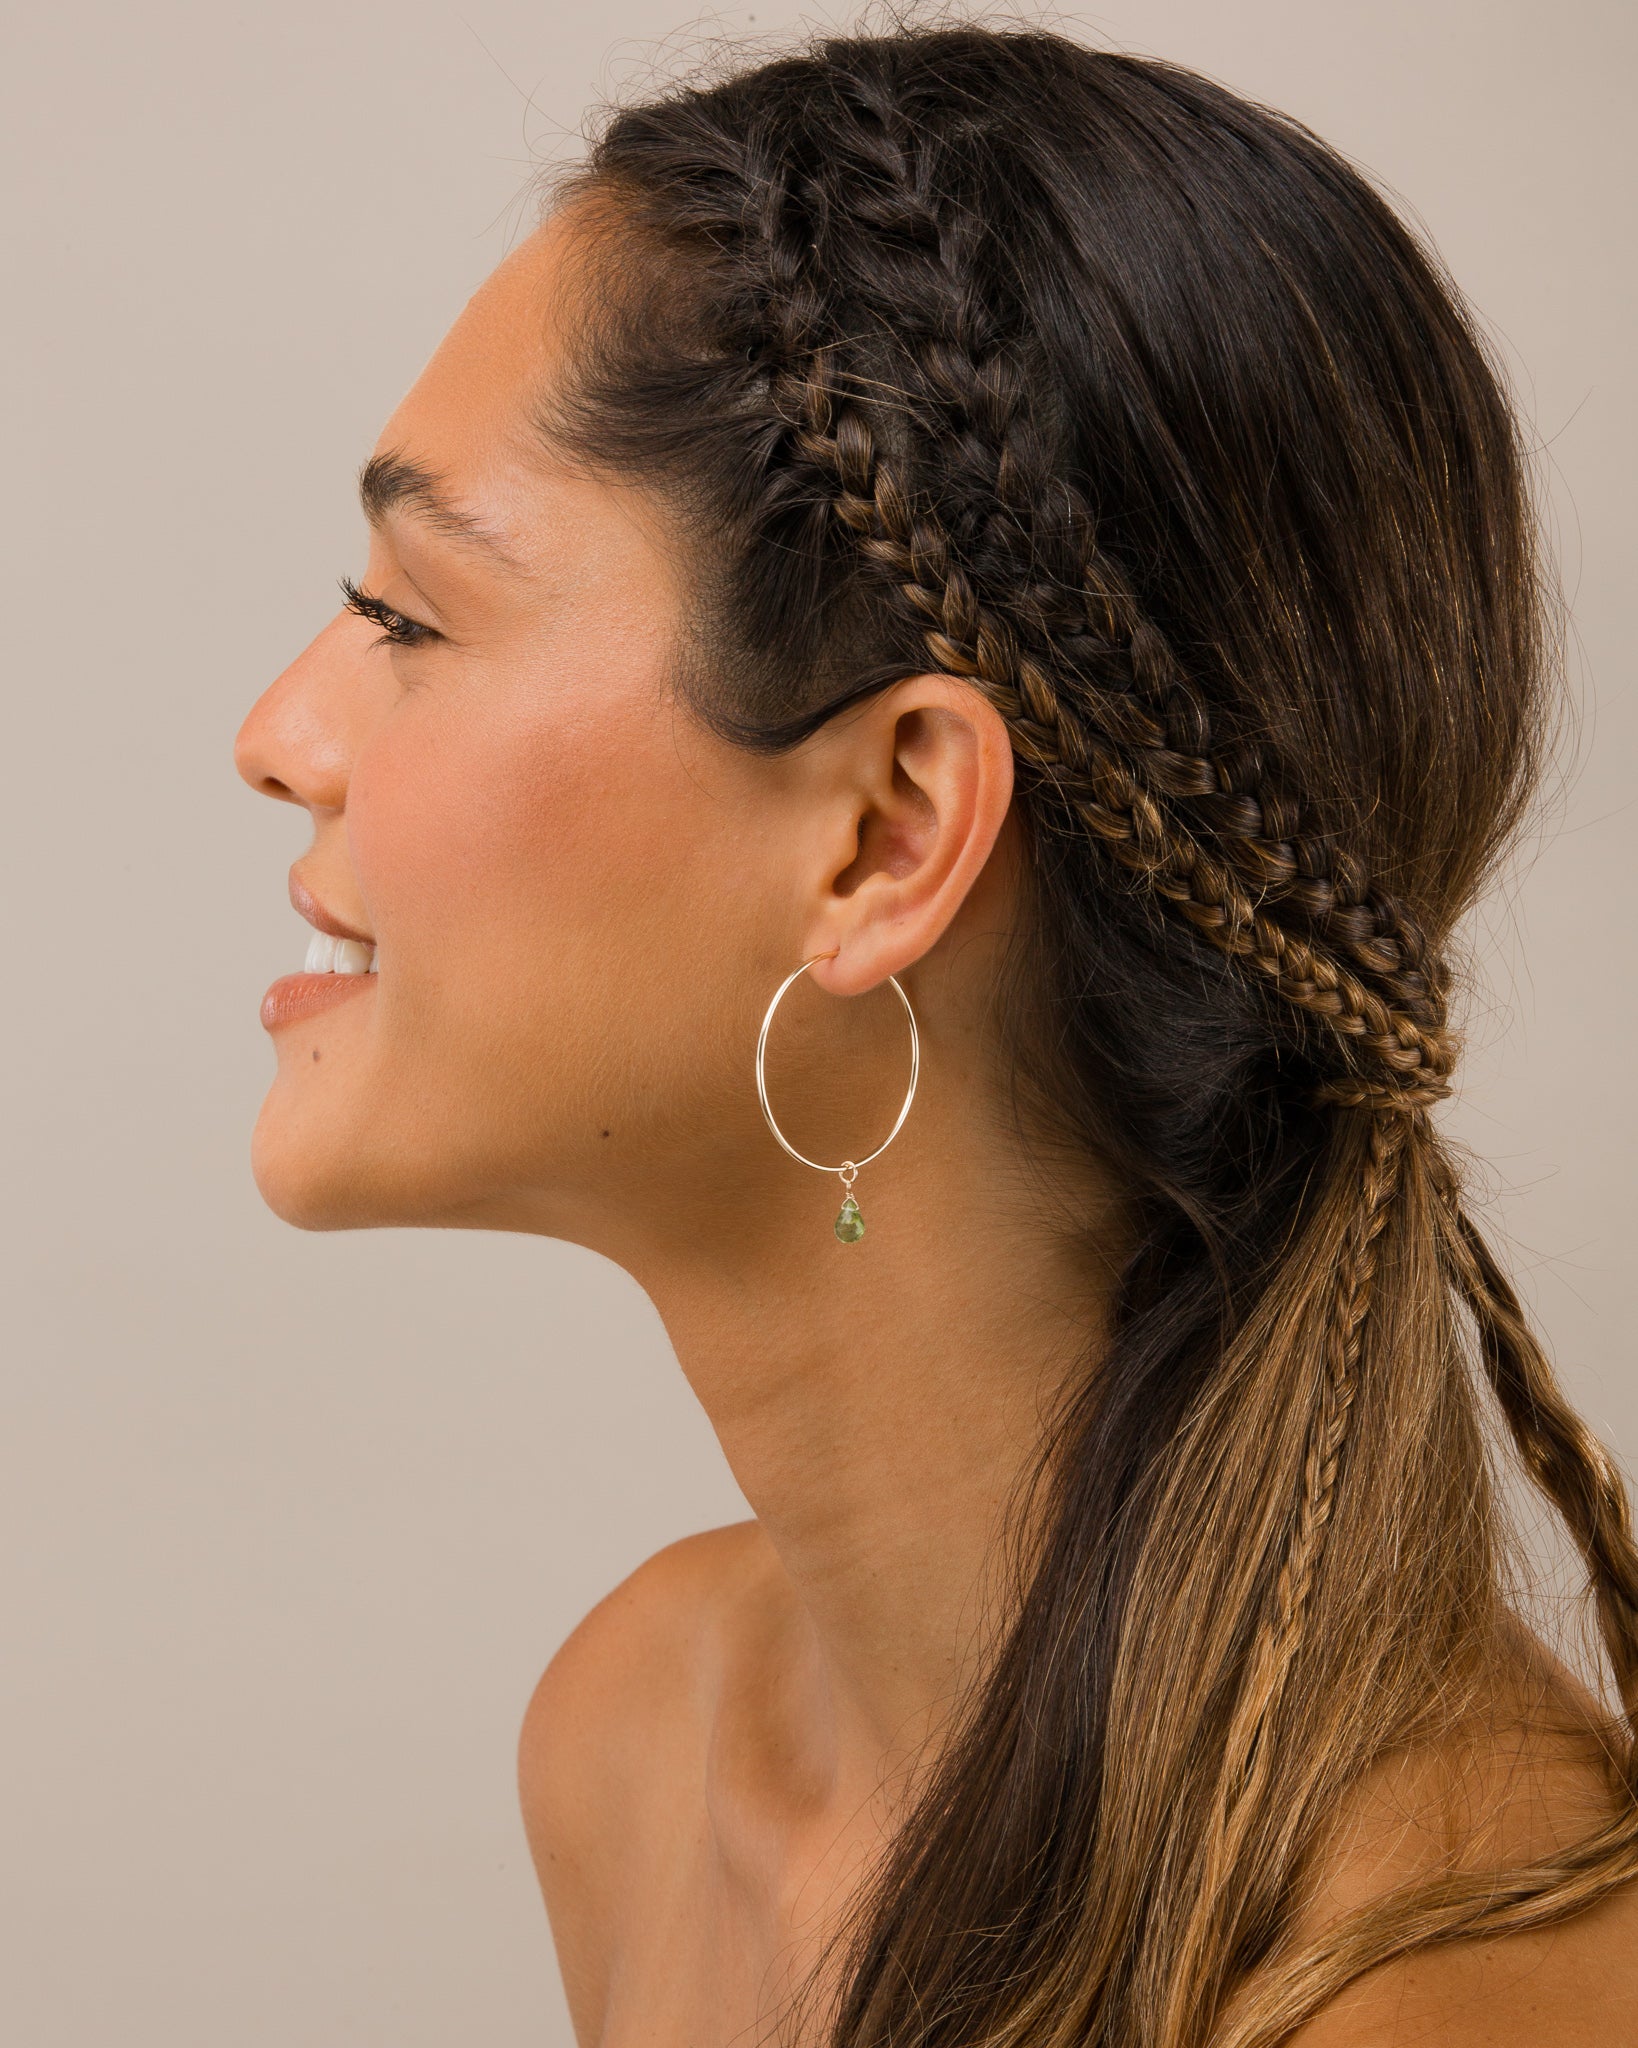 14K Gold Filled Peridot Hoop Earrings | Inspiration Her Jewellery